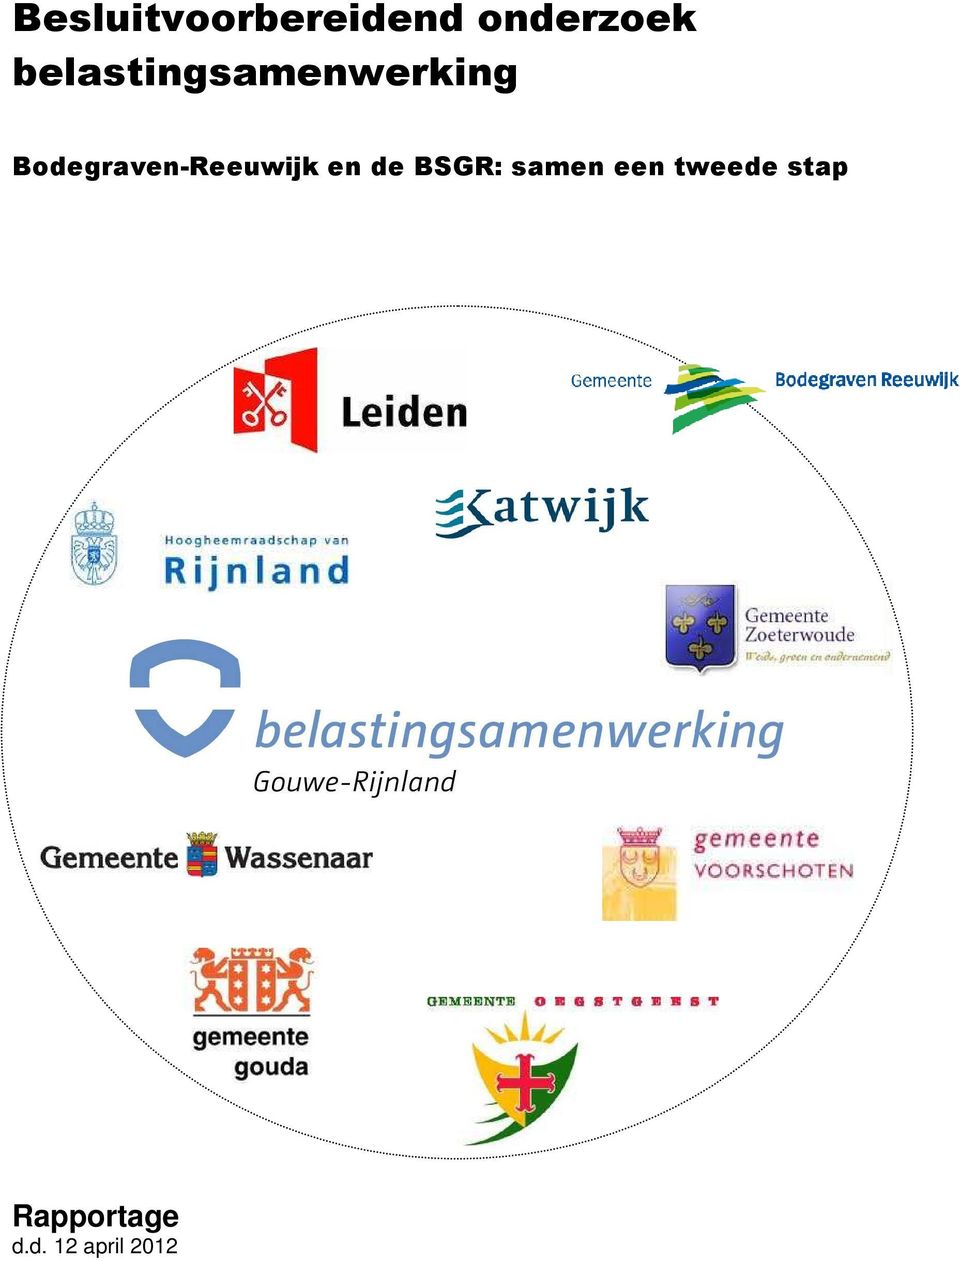 Bodegraven-Reeuwijk en de BSGR: